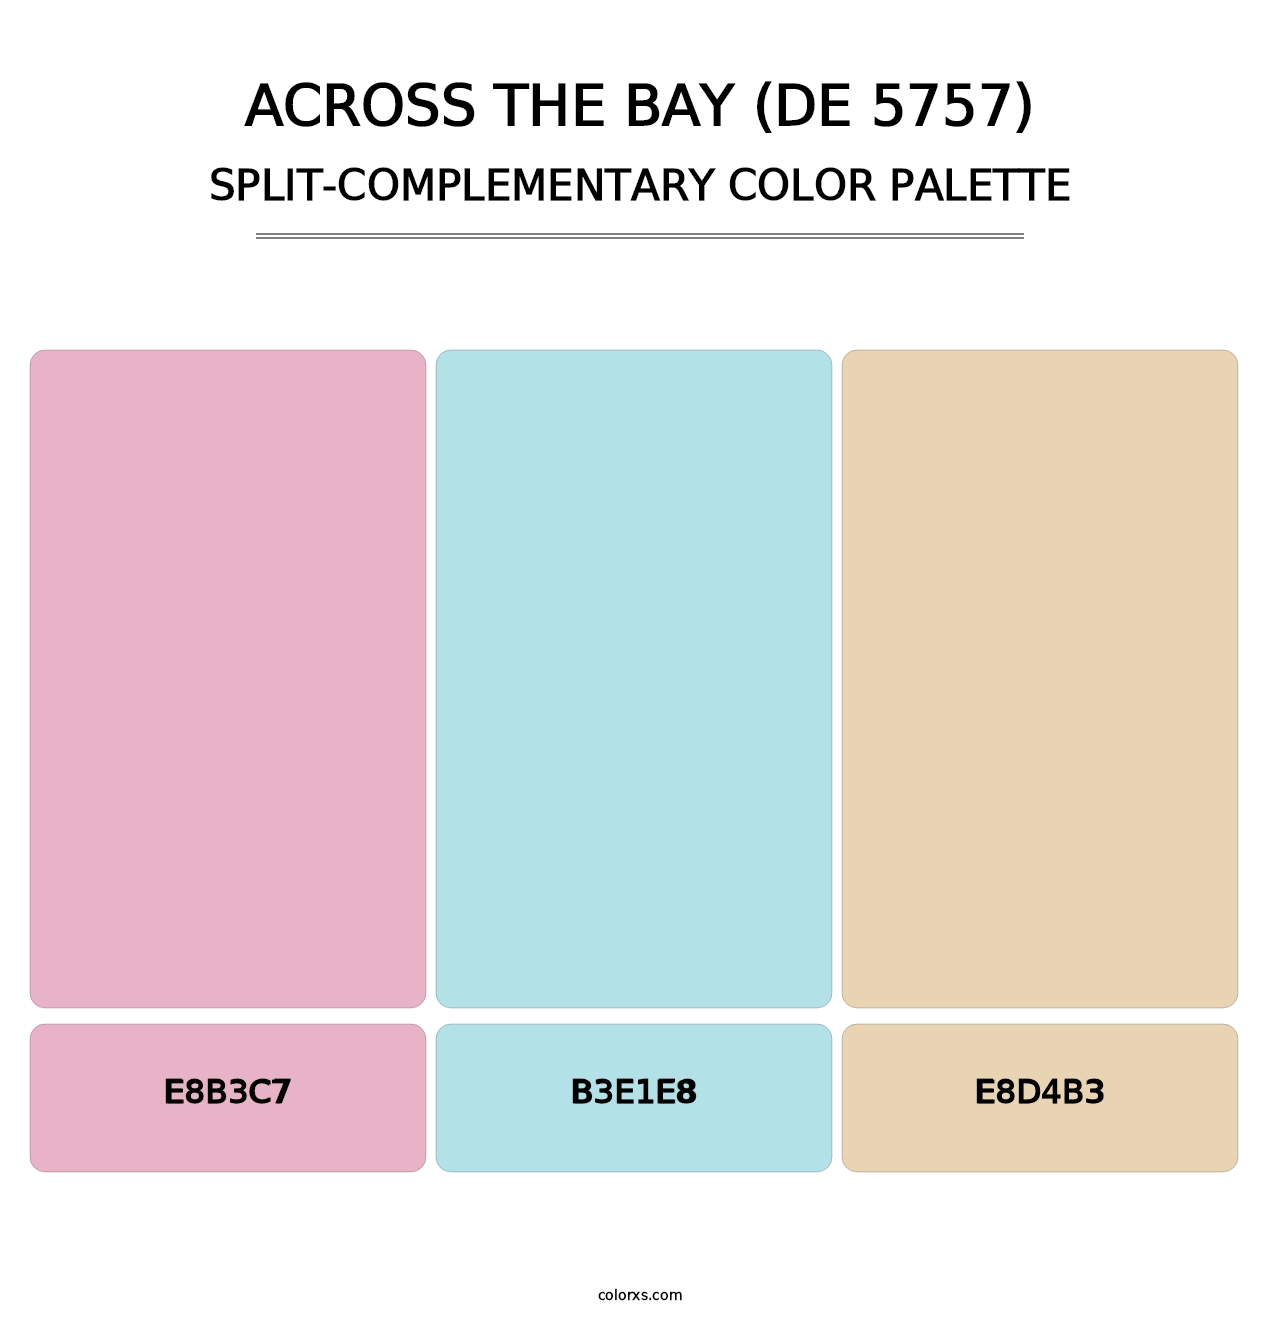 Across the Bay (DE 5757) - Split-Complementary Color Palette